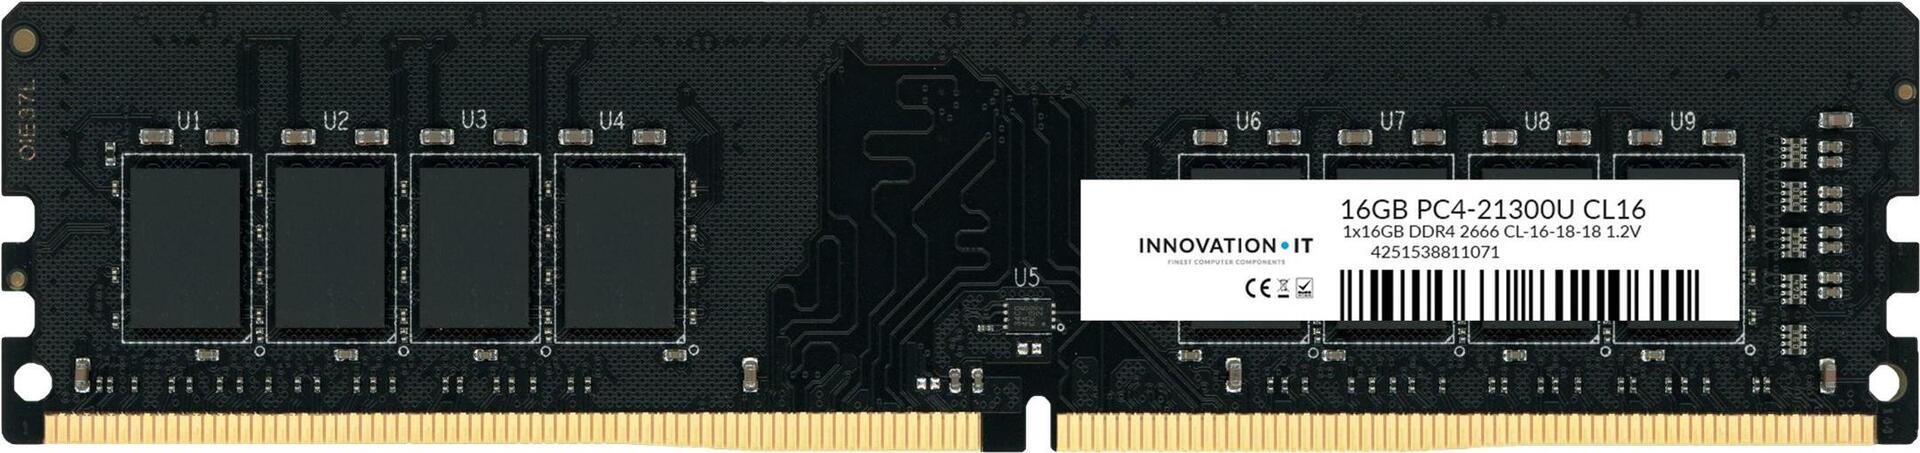 2666 16GB Innovation IT CL16 1.2V LD (CL16-18-18) - 16 GB (4251538811071)